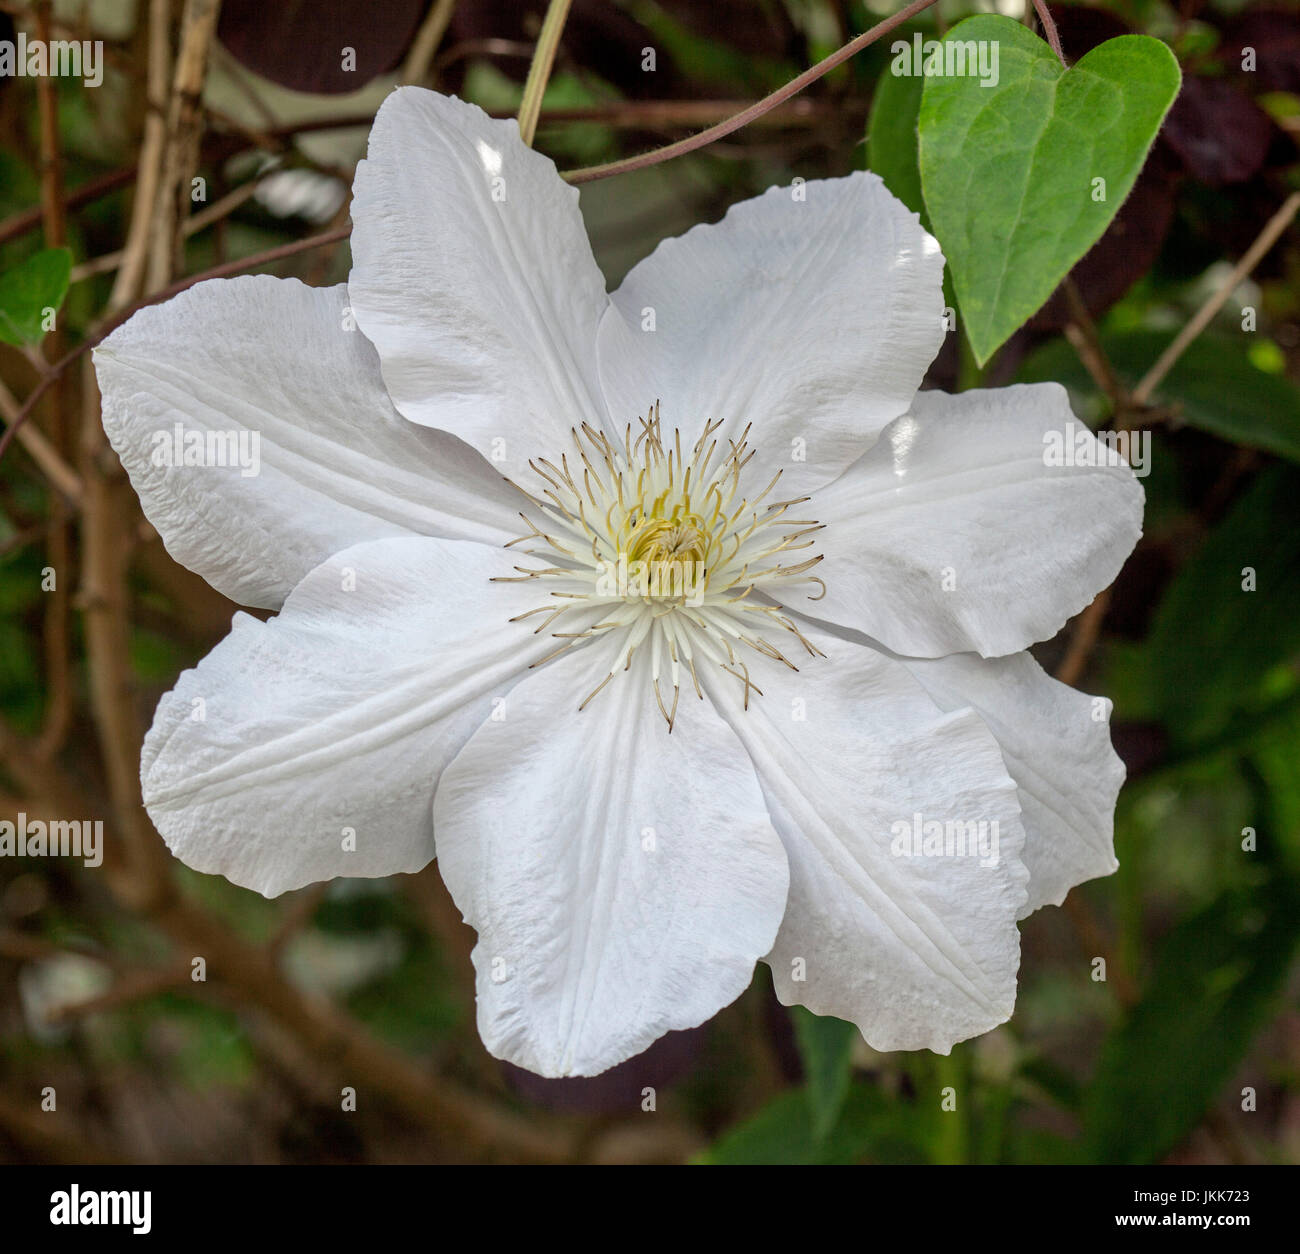 Grande fleur blanche de clématites, un grimpeur de feuillus, sur un fond sombre Banque D'Images